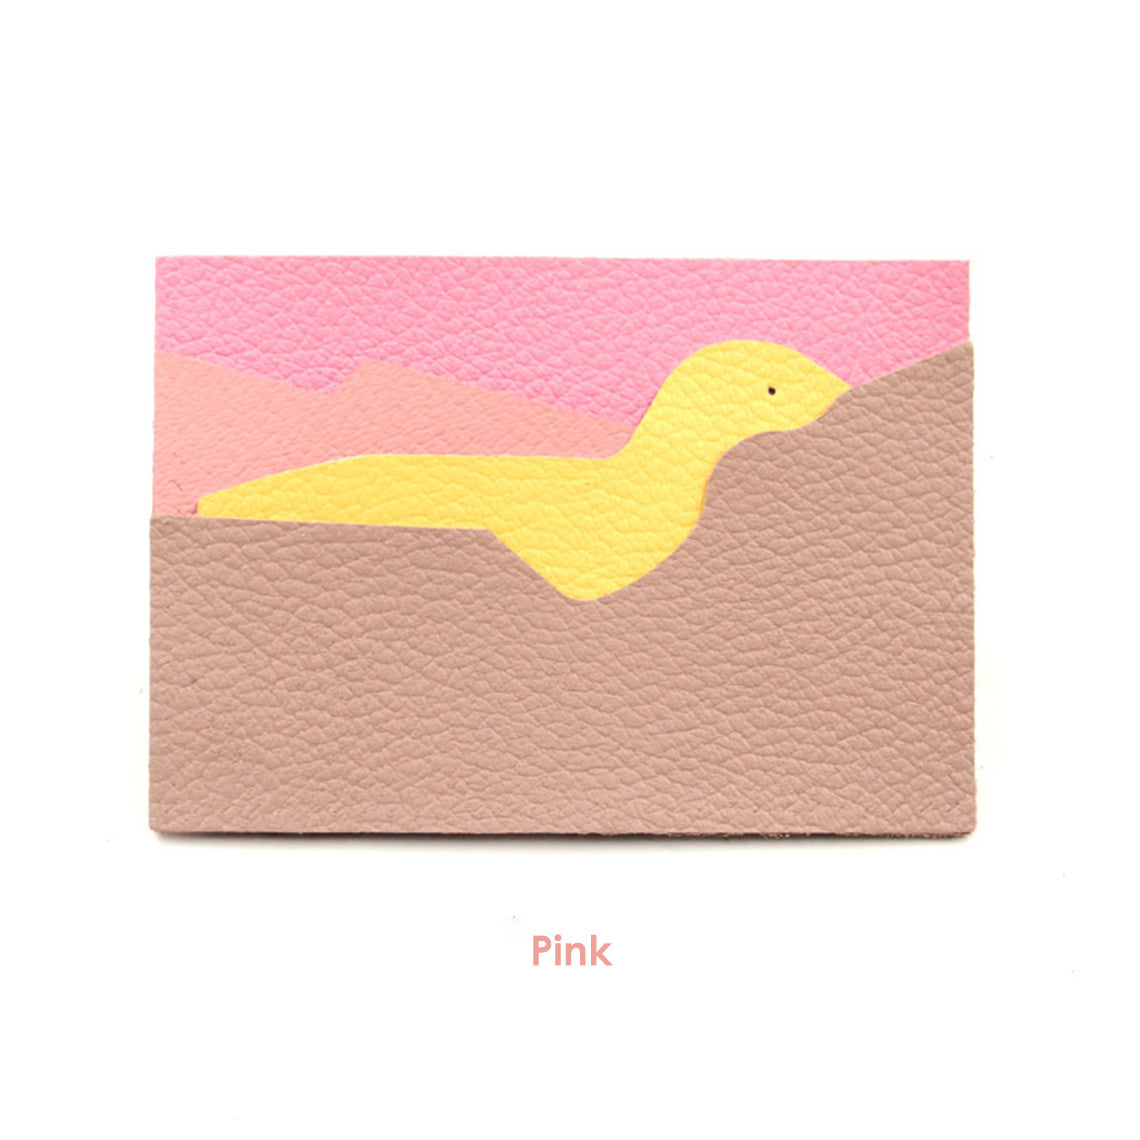 Pink leather card holder | DIY leather card holder kit | POPSEWING™